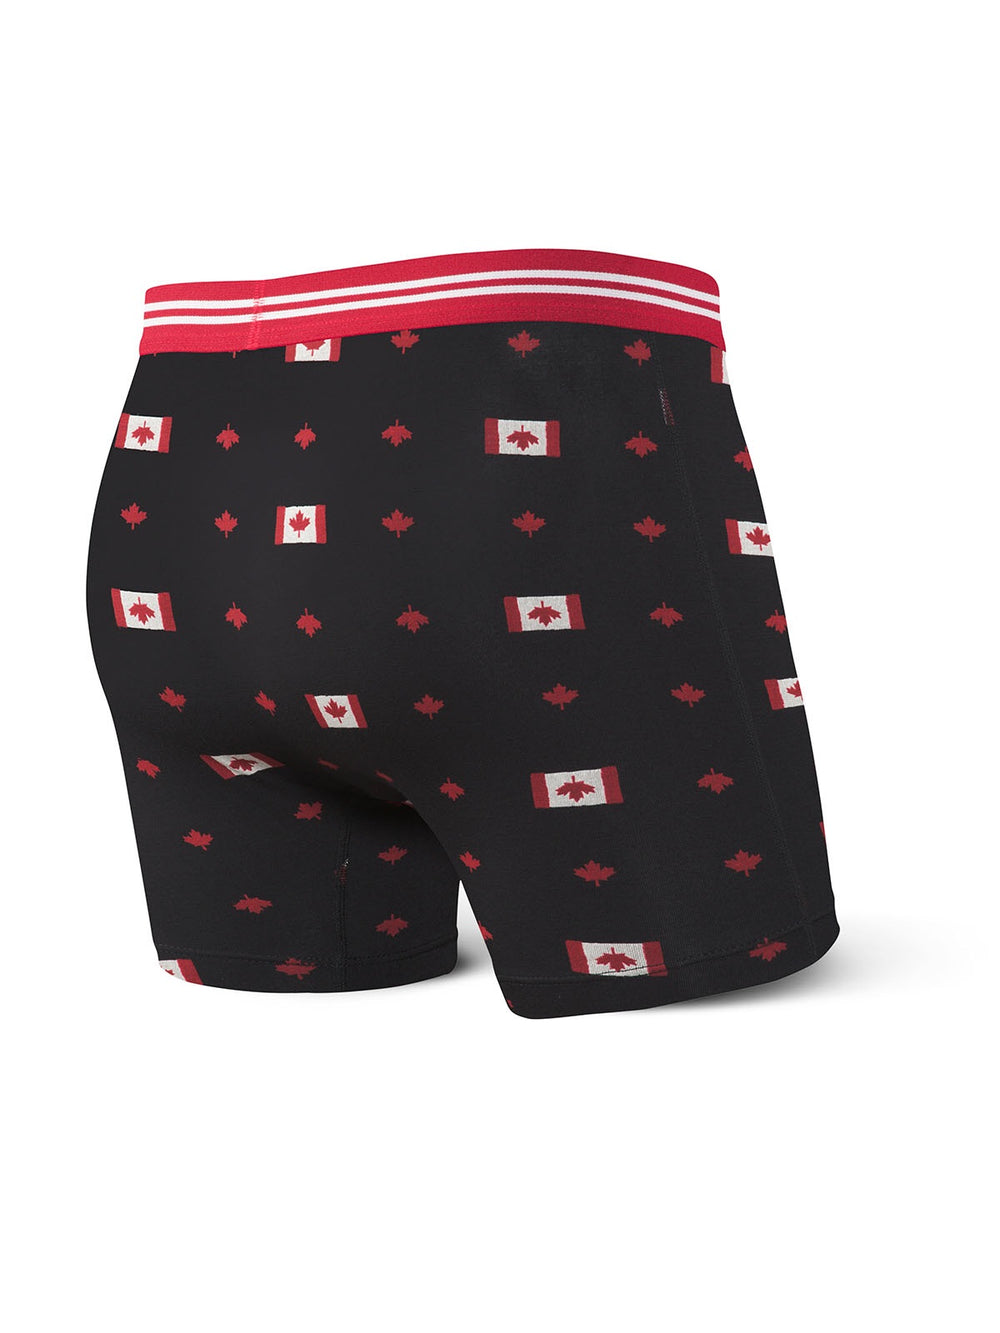 ELLEN Emoji Modal Black Red White Peach Boxer Briefs Underwear Mens Sz 3XL  XXXL